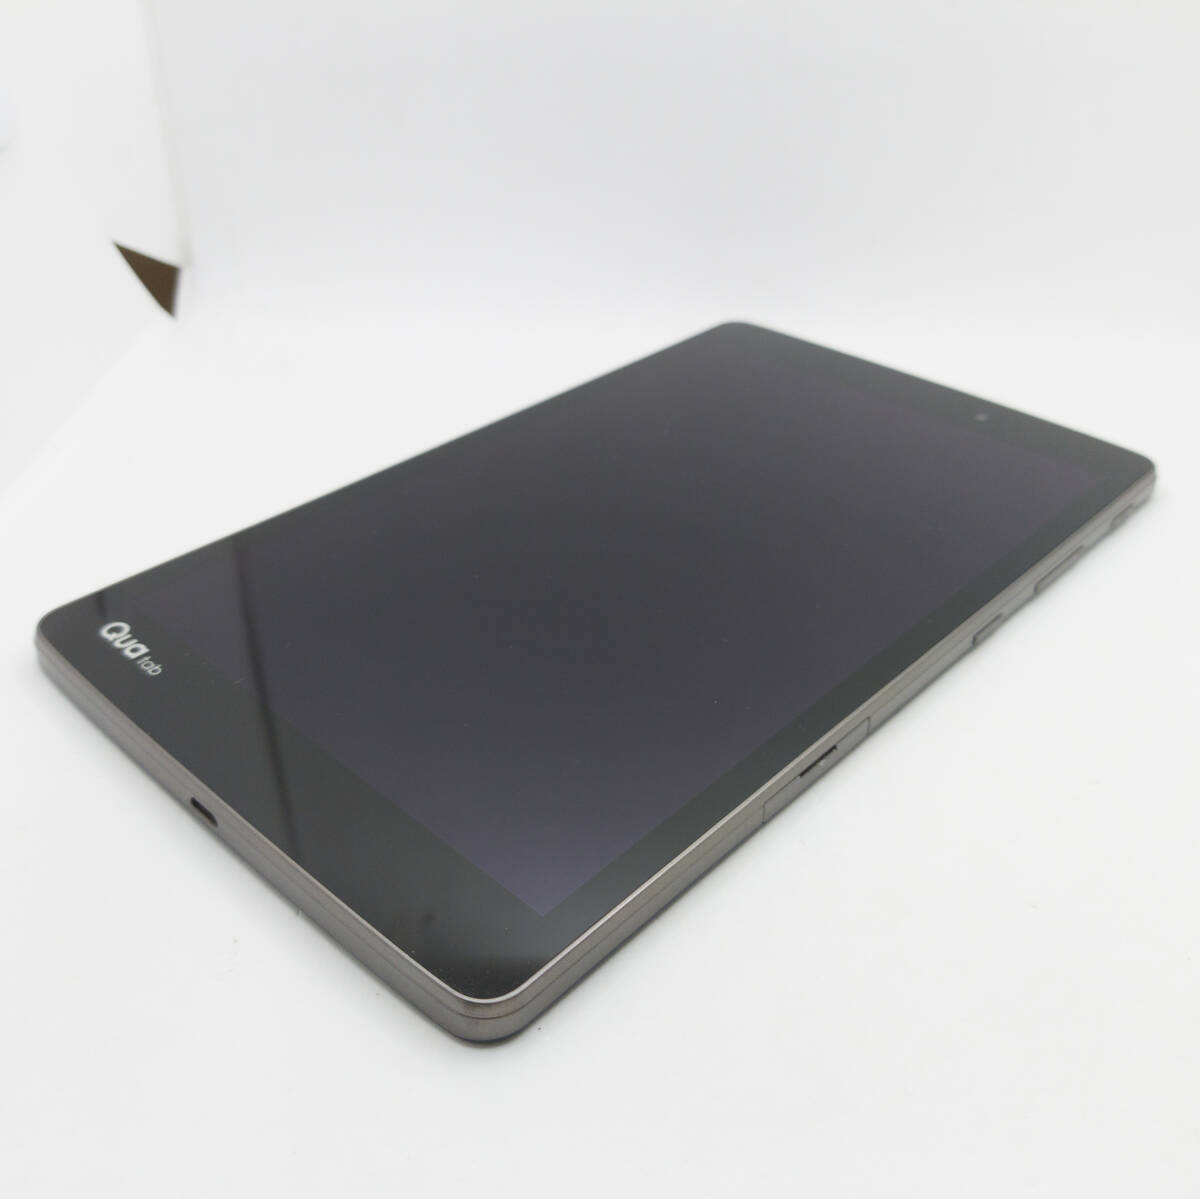 LG Qua Tab PX LGT31 au 判定〇 キュアタブ 8インチ タブレット アンドロイド Android 本体 #ST-03014